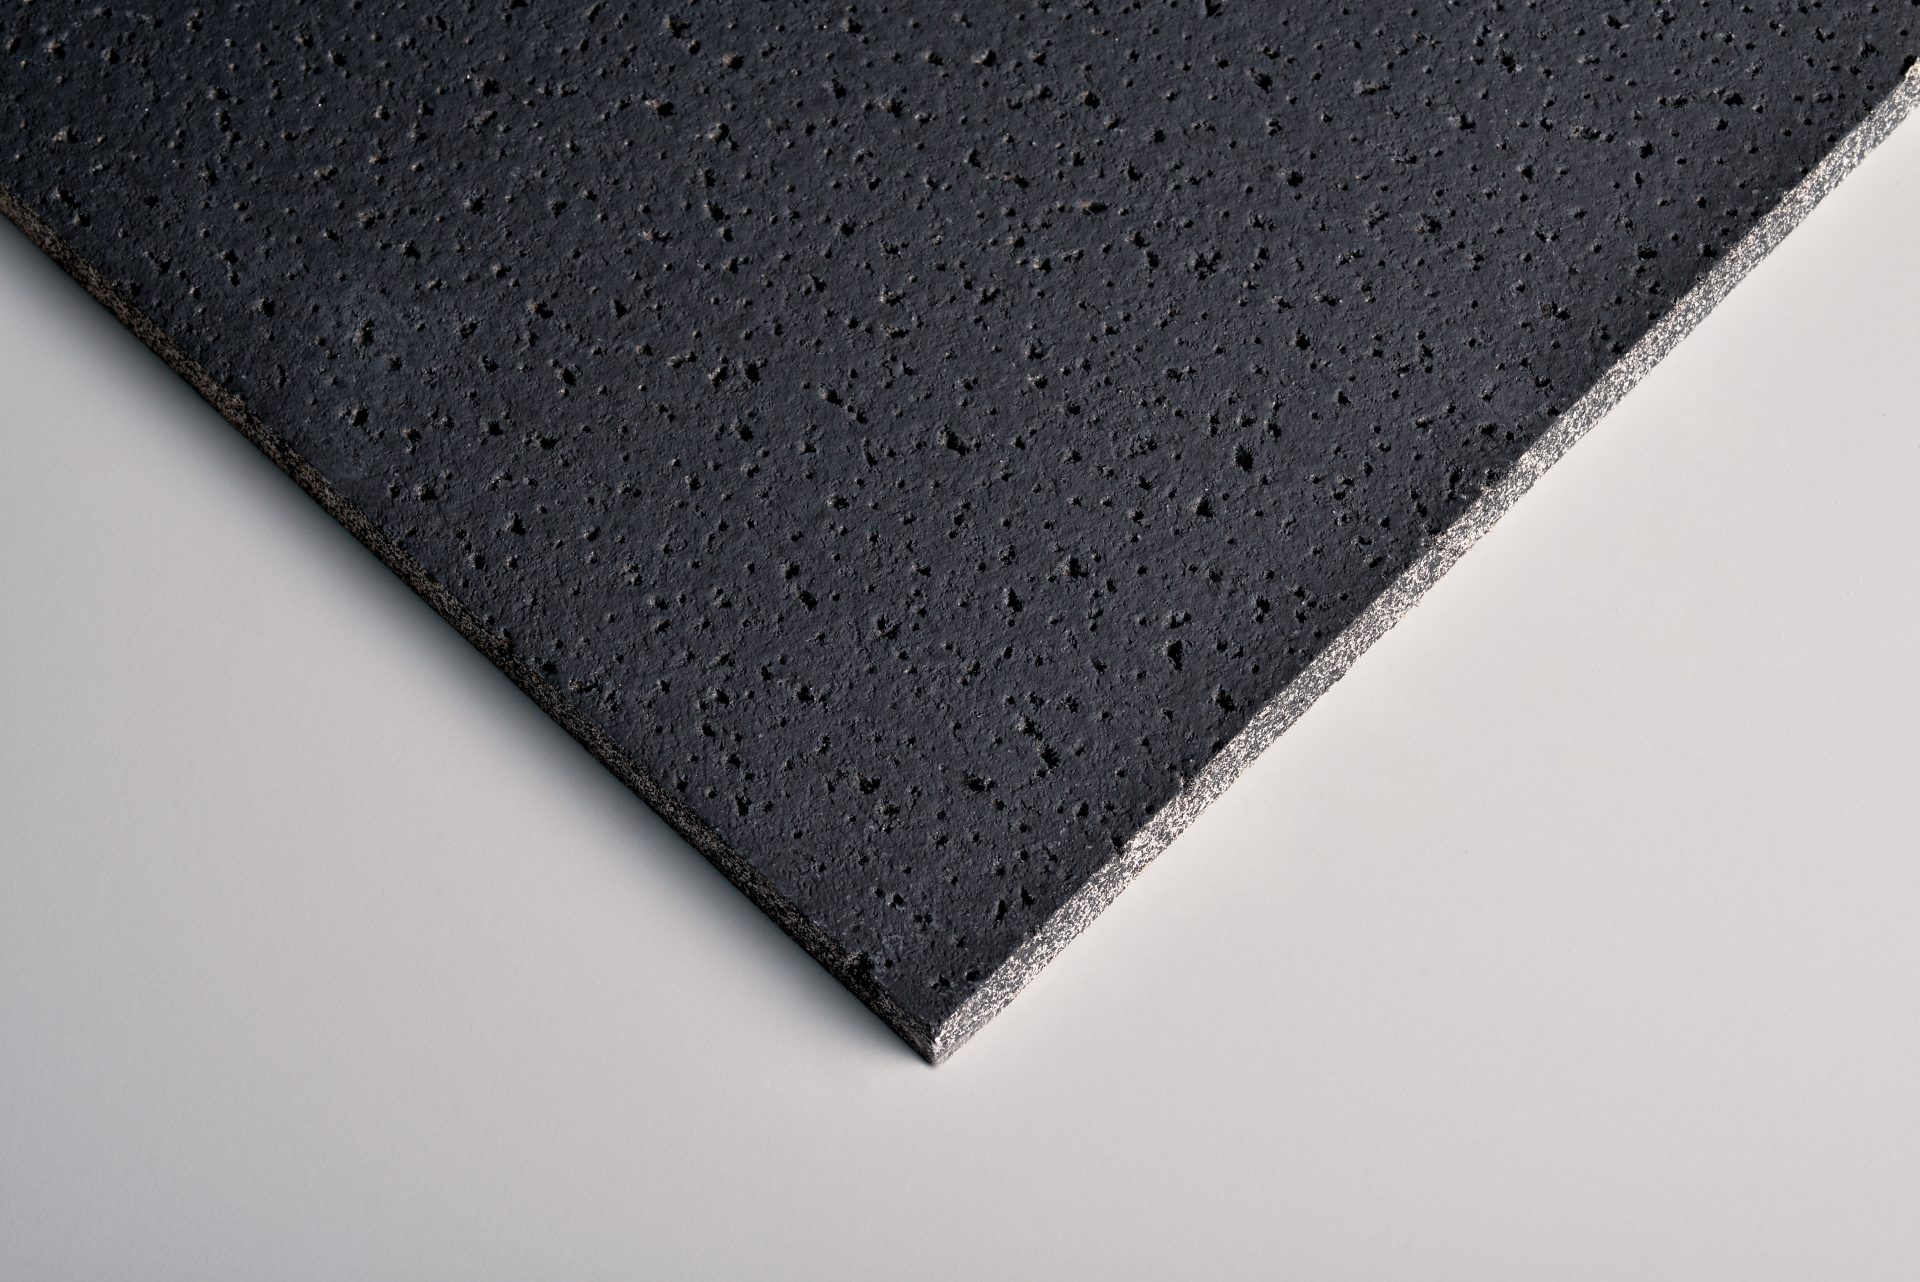 Zentia Fission FT 15mm Black Board edge